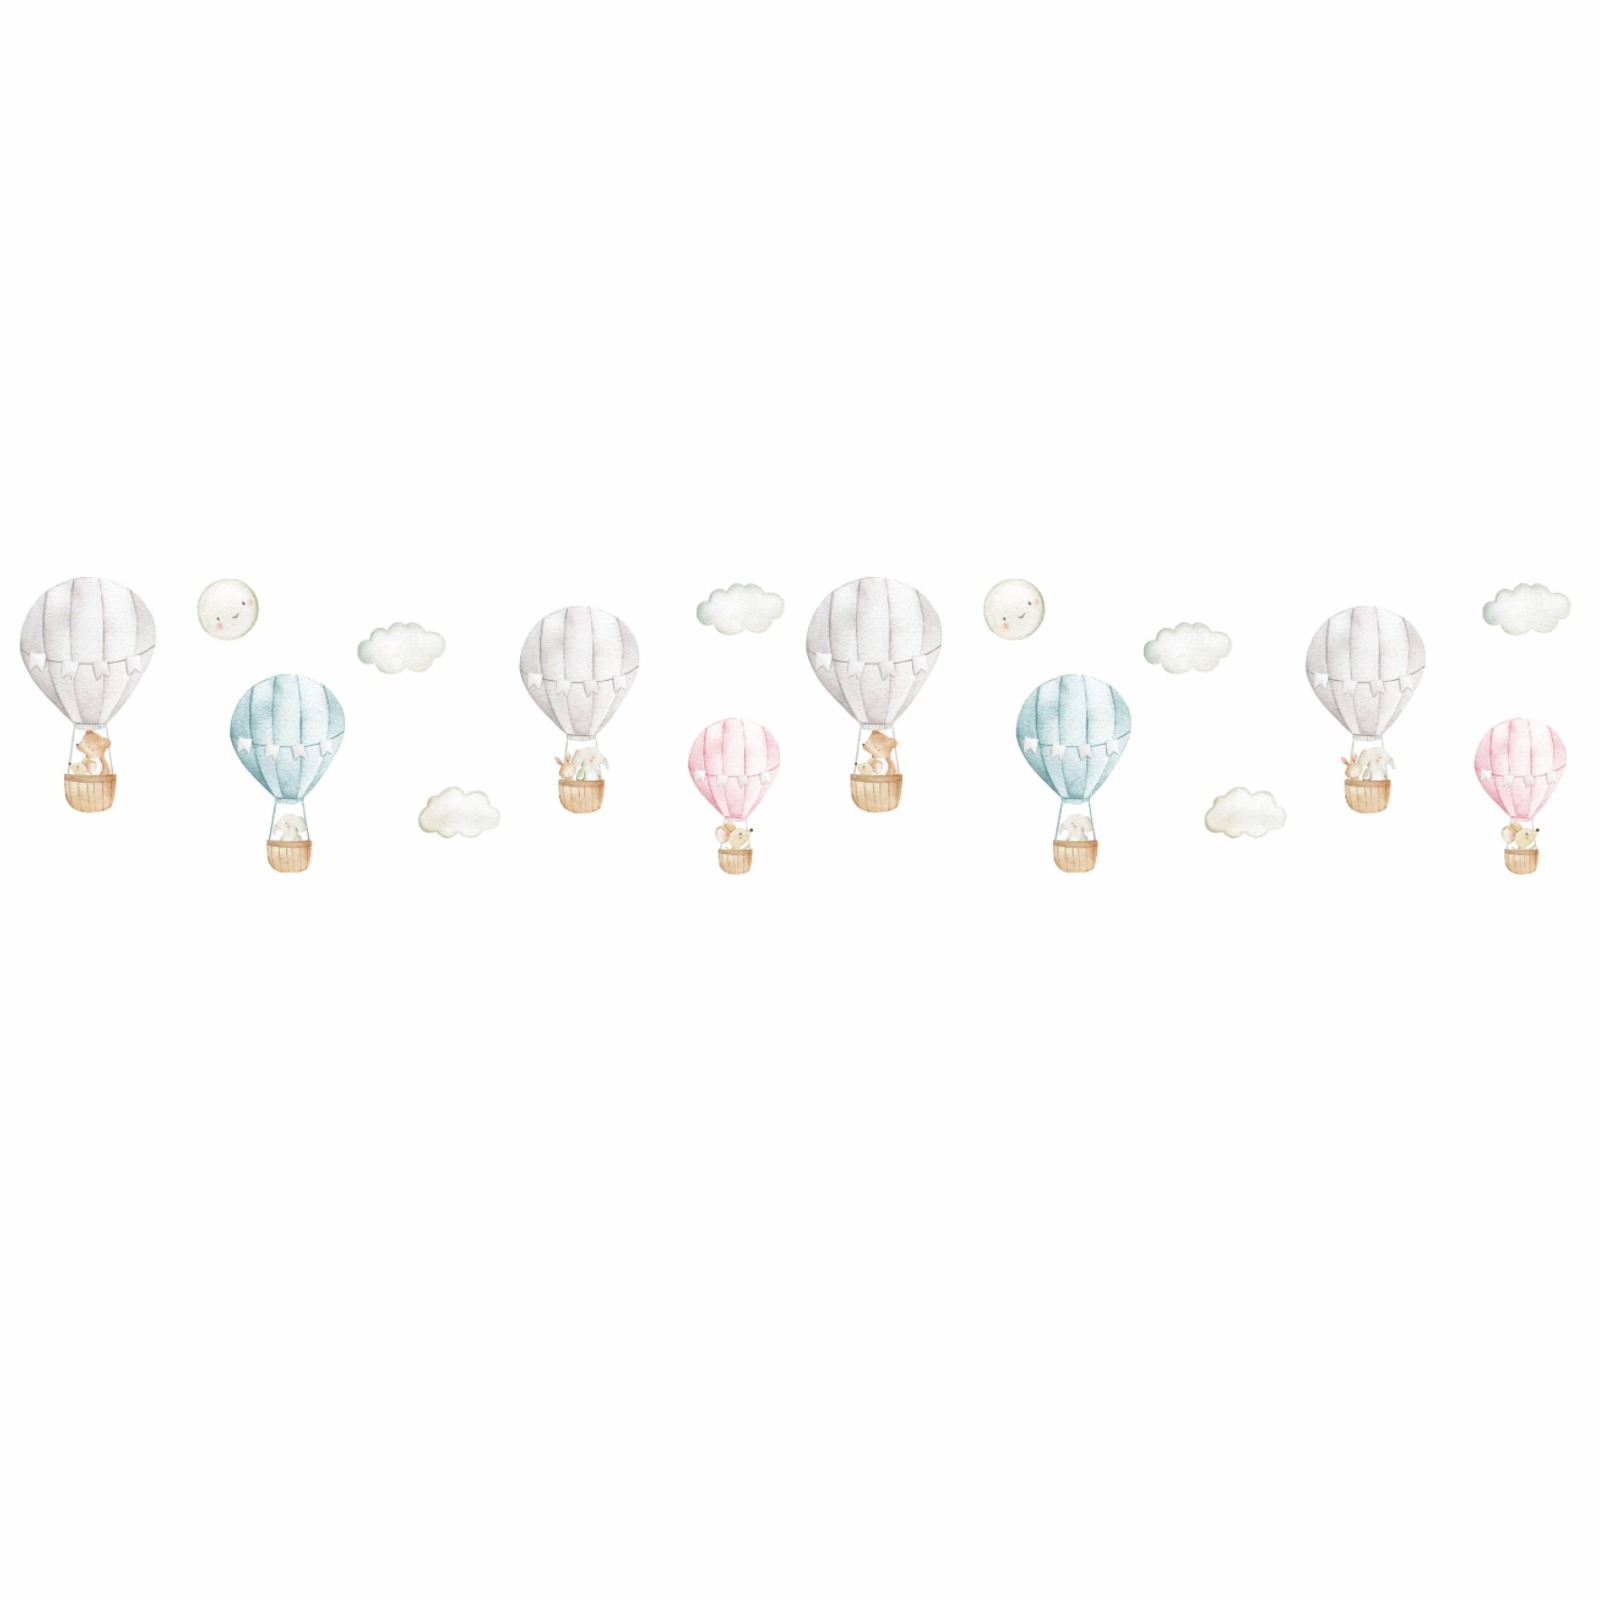 Lampe Heißluftballons mit Tieren, viele Farben Lampenschirm Kinderzimmer, Hängelampe Kinder 2